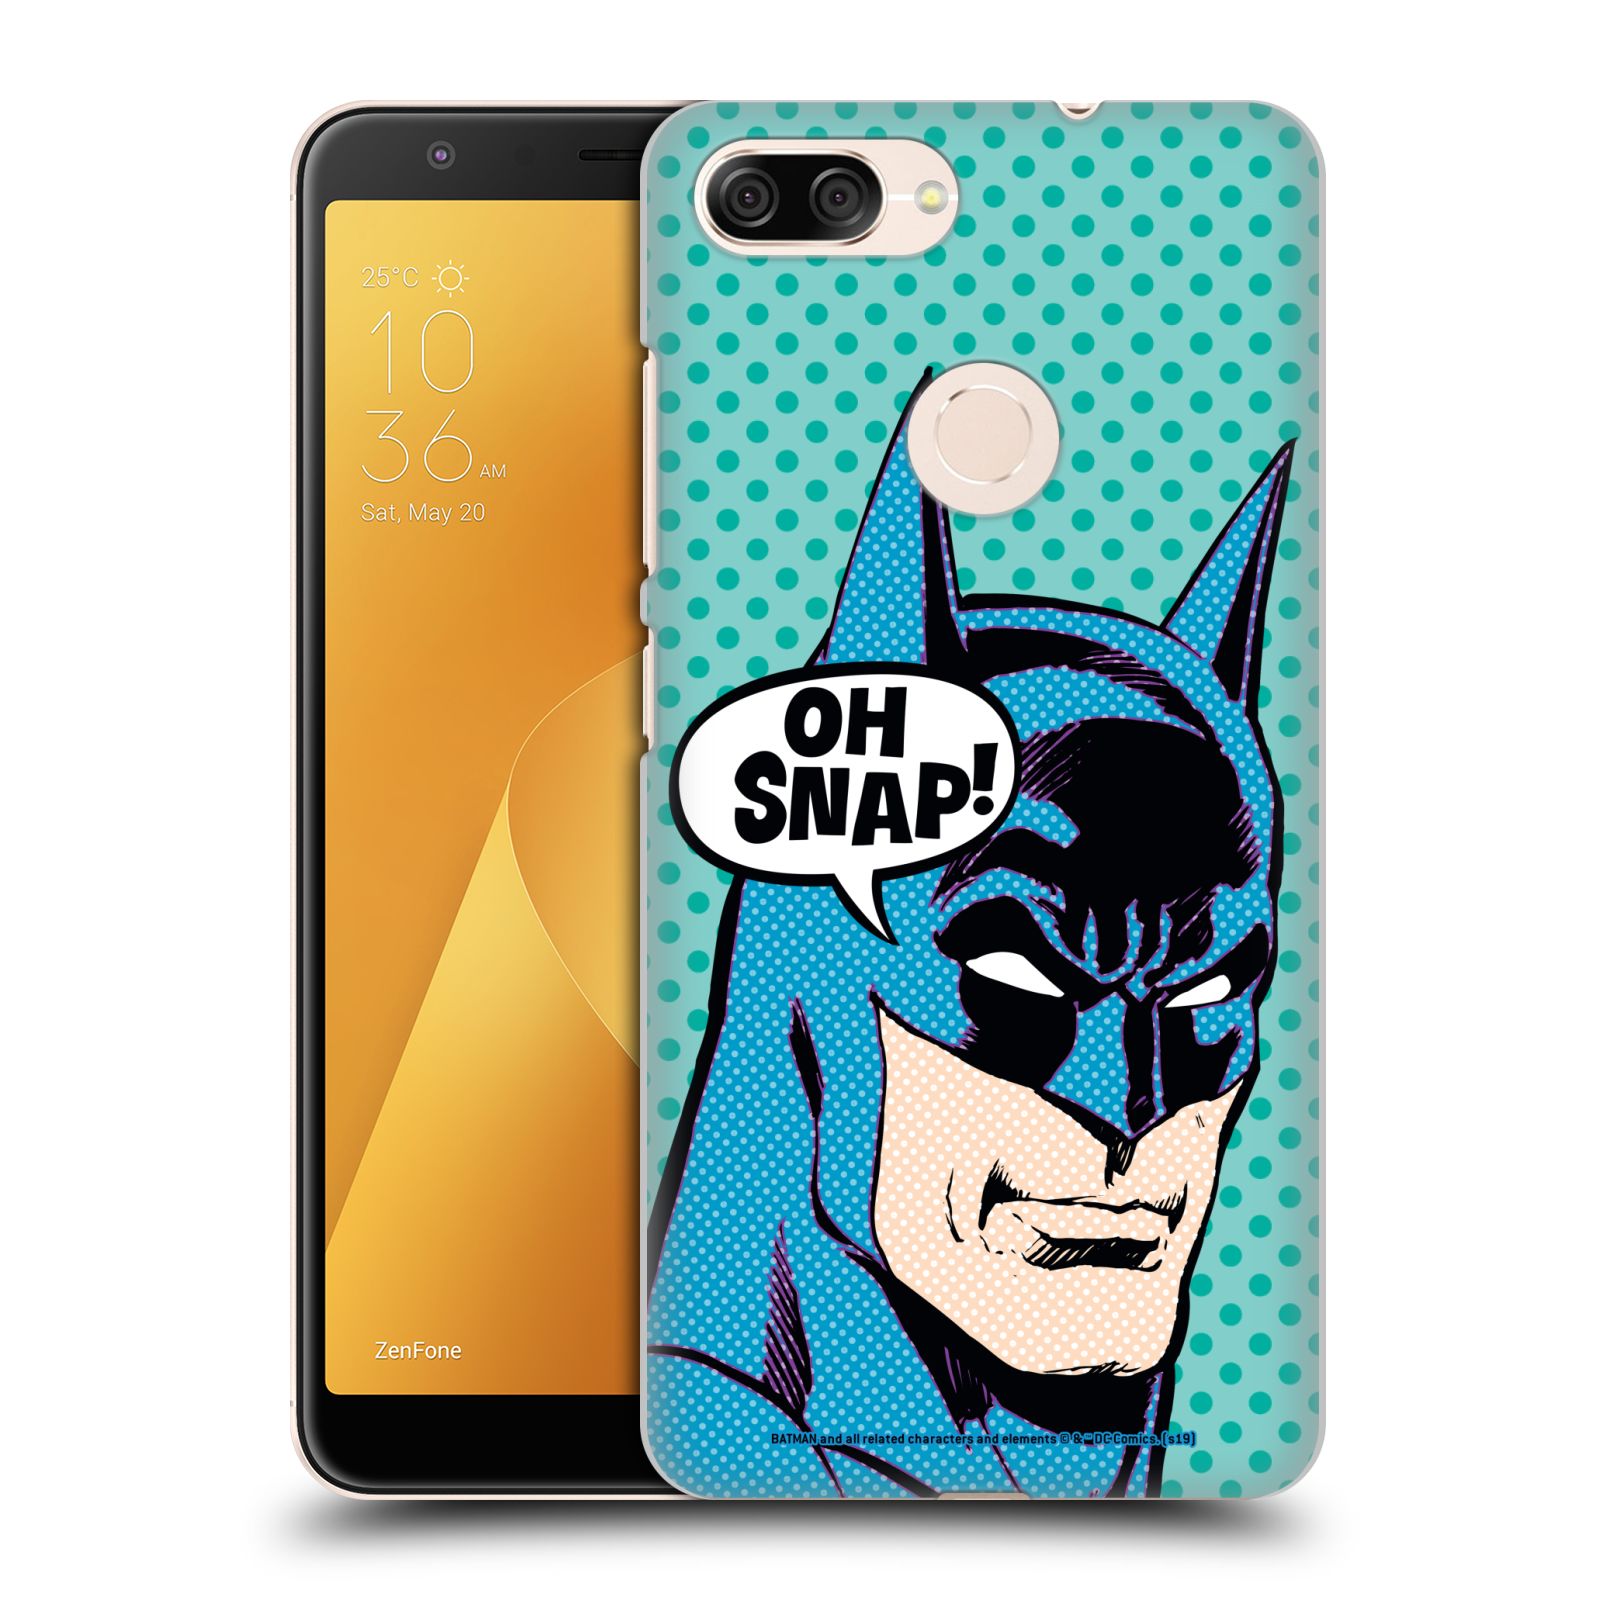 Pouzdro na mobil ASUS ZENFONE Max Plus M1 - HEAD CASE - DC komix Batman Pop Art tvář